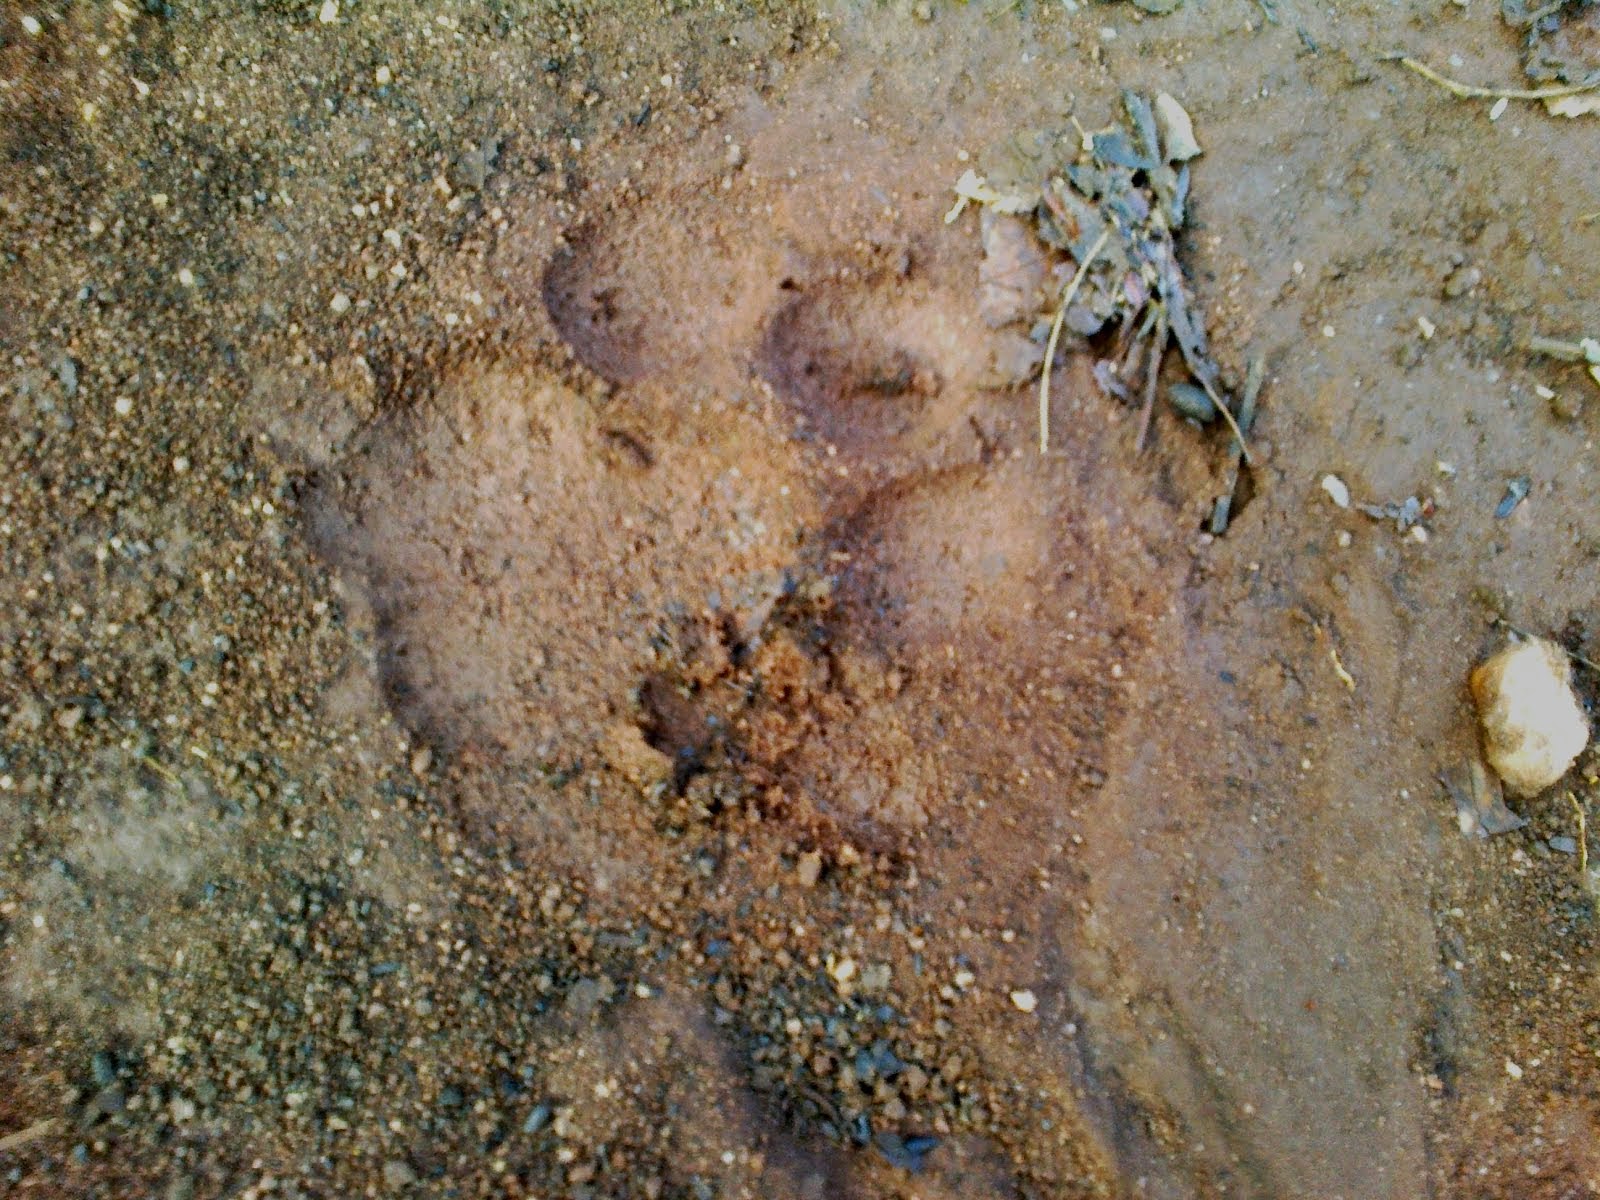 Foot Print of Tiger